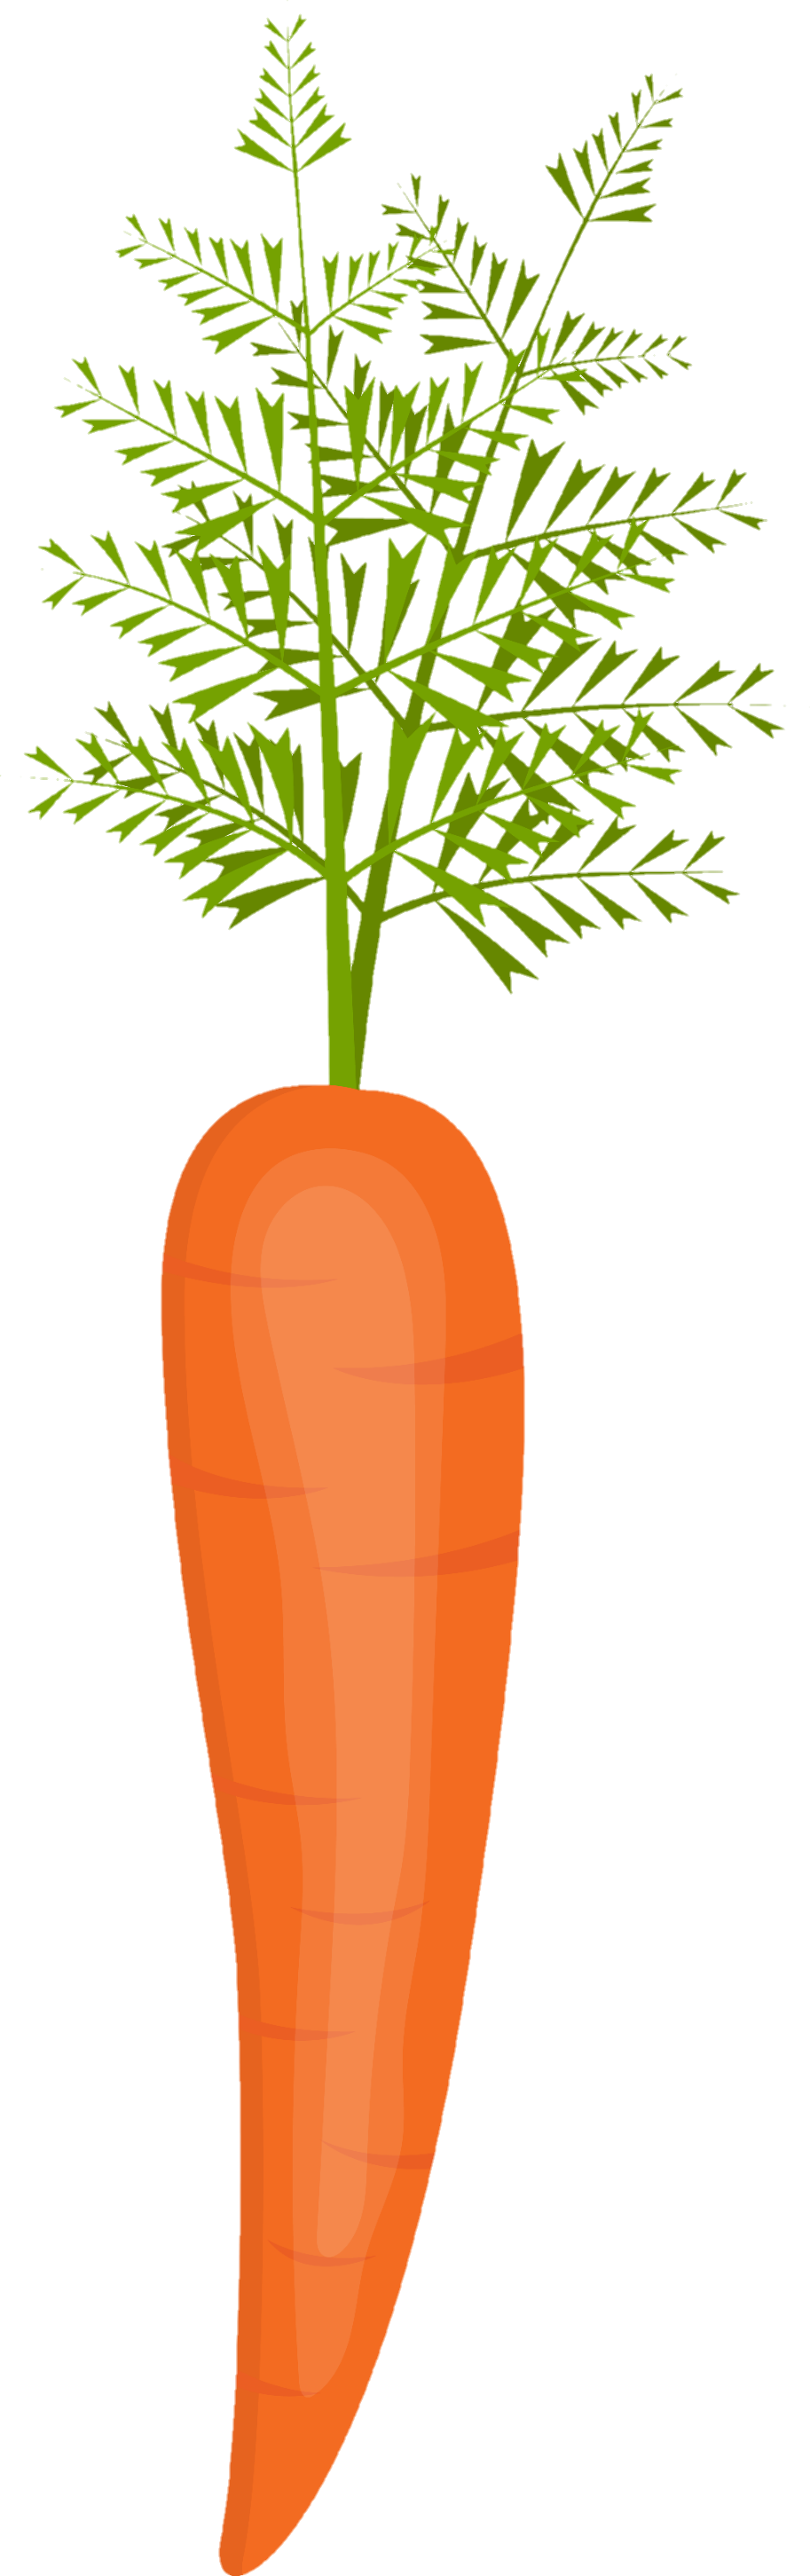 Carrot-29-1